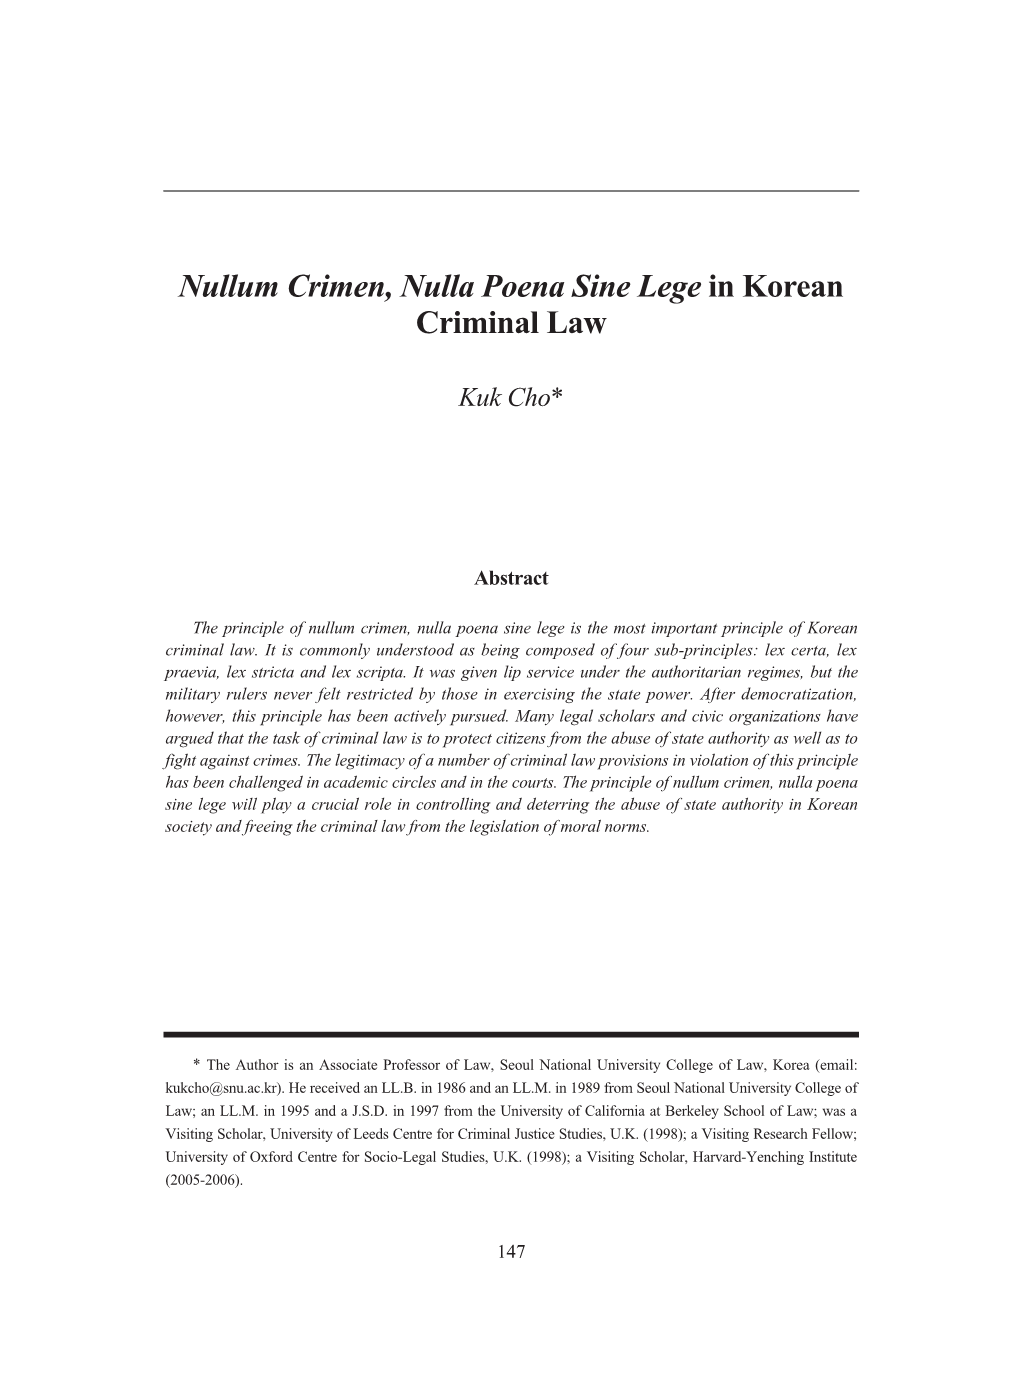 Nullum Crimen, Nulla Poena Sine Lege in Korean Criminal Law